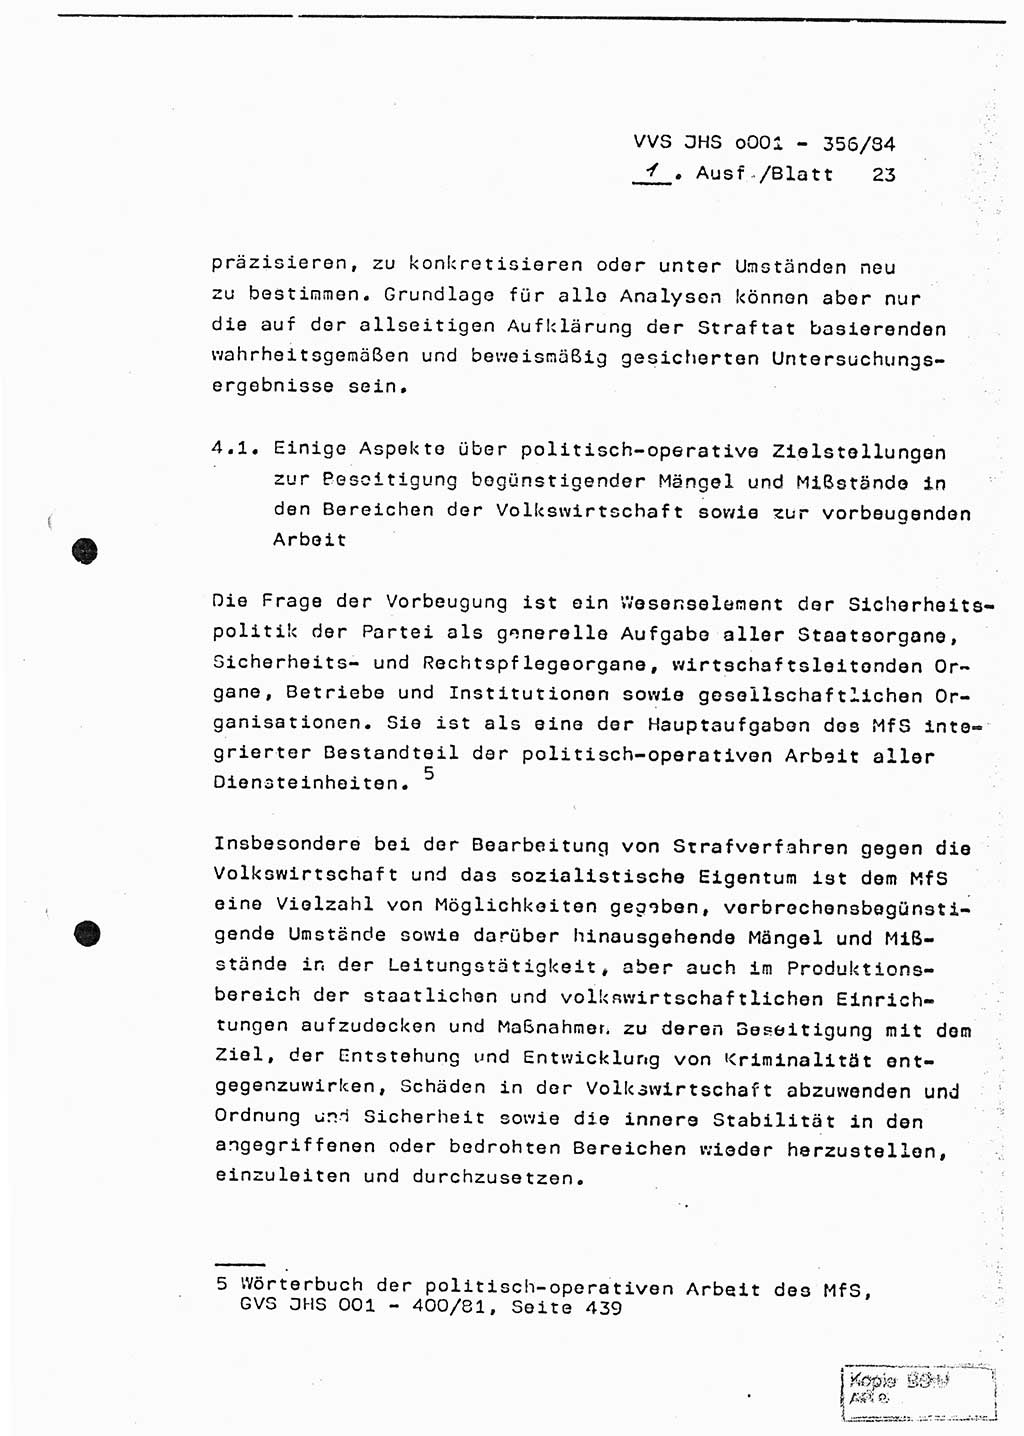 Diplomarbeit, Major Lutz Rahaus (HA Ⅸ/3), Ministerium für Staatssicherheit (MfS) [Deutsche Demokratische Republik (DDR)], Juristische Hochschule (JHS), Vertrauliche Verschlußsache (VVS) o001-356/84, Potsdam 1984, Seite 23 (Dipl.-Arb. MfS DDR JHS VVS o001-356/84 1984, S. 23)